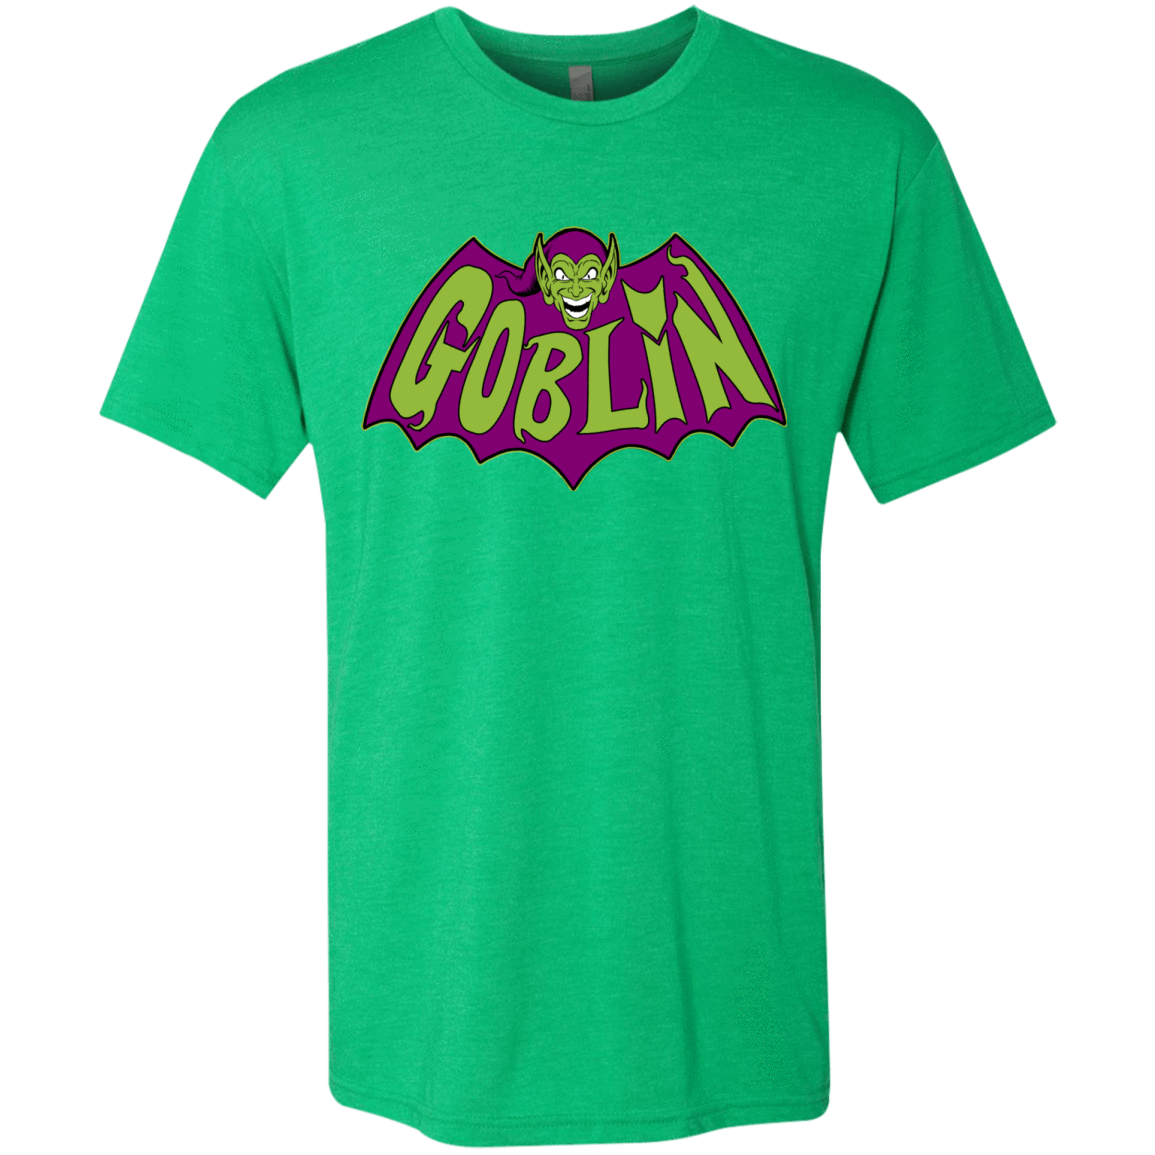 T-Shirts Envy / Small Goblin Men's Triblend T-Shirt